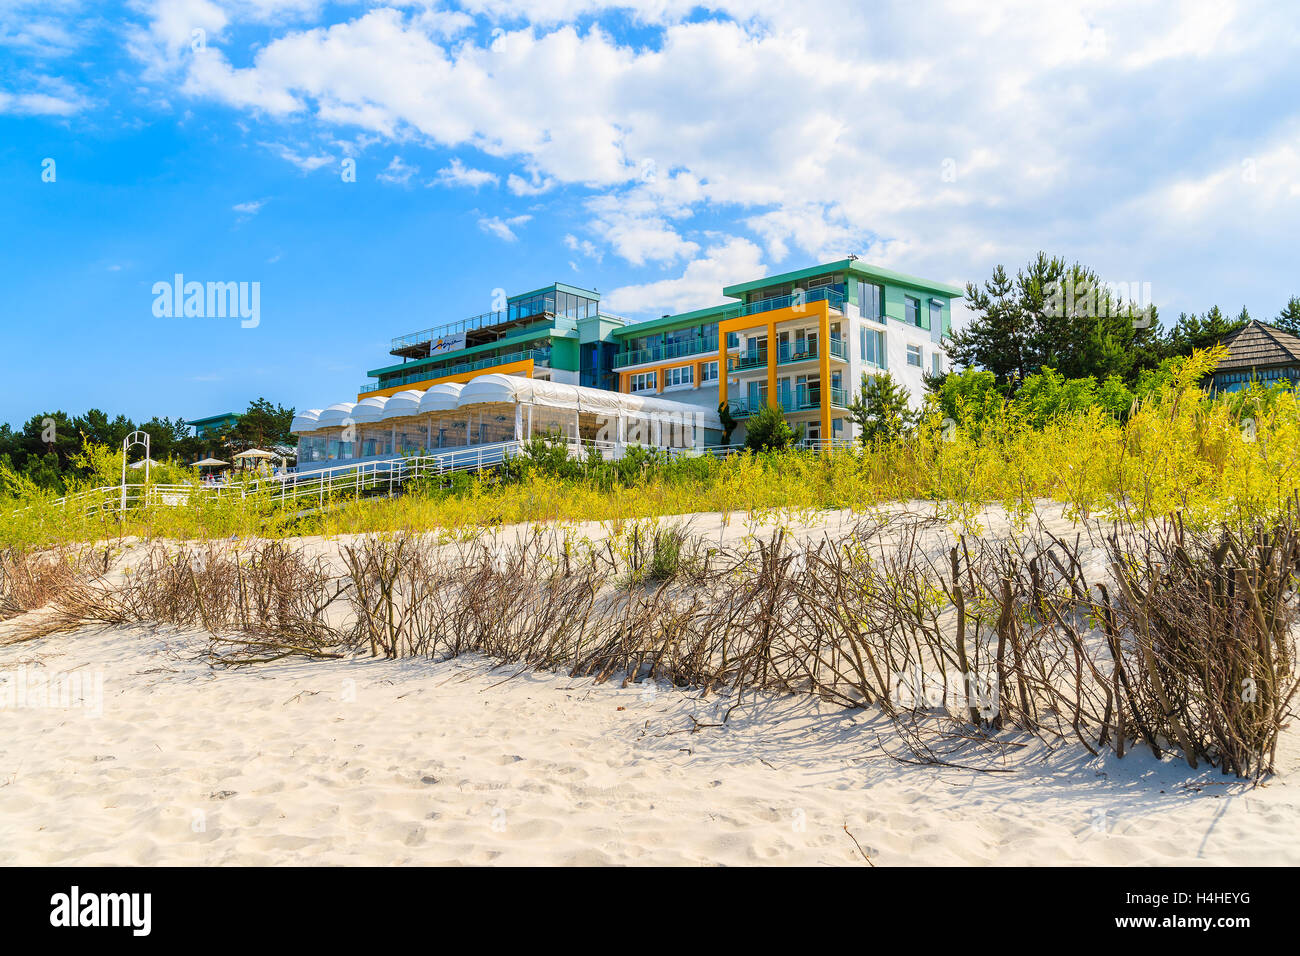 JURATA Strand, Polen - 21. Juni 2016: ein Blick auf Luxus-Hotel "Bryza" befindet sich am Strand in Jurata Stadt auf der Halbinsel Hel. Wohlhabende pe Stockfoto